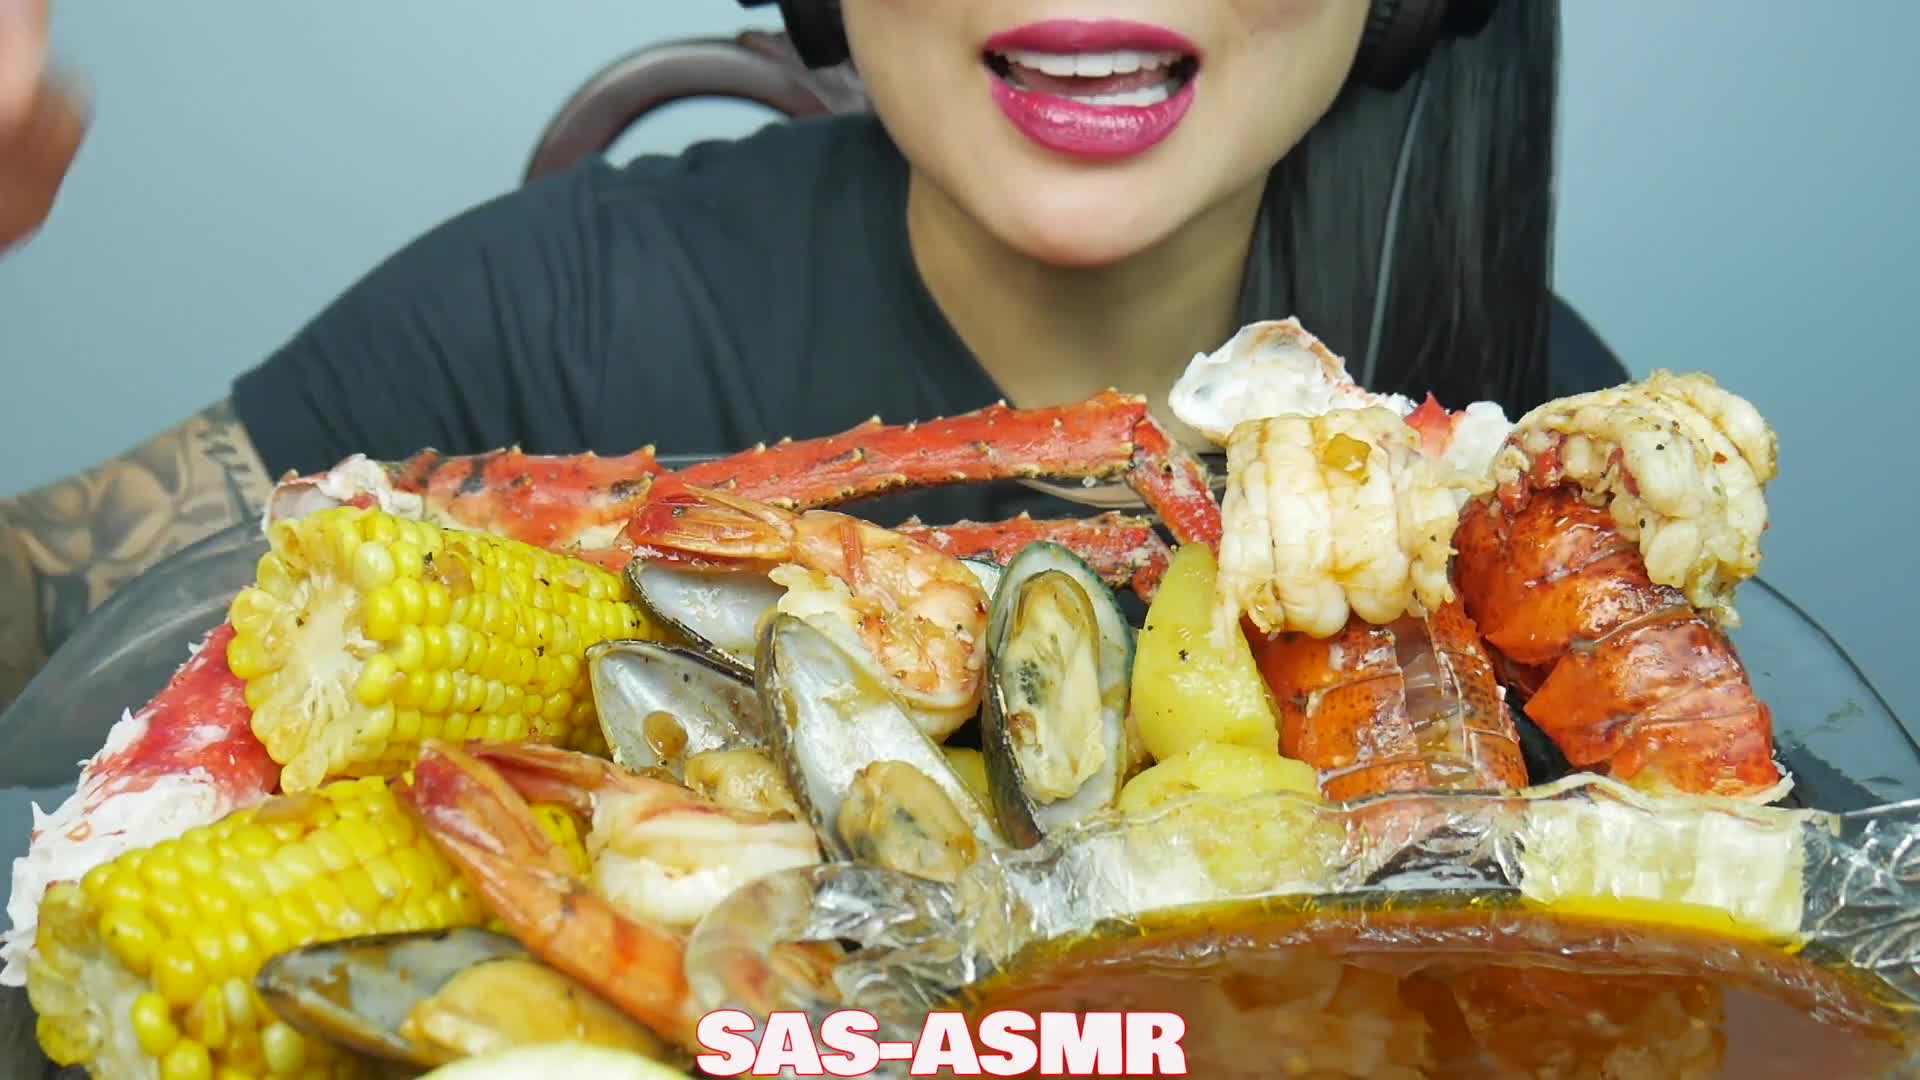 "Food Sounds Good" Seafood Pan Ye said "w ~()